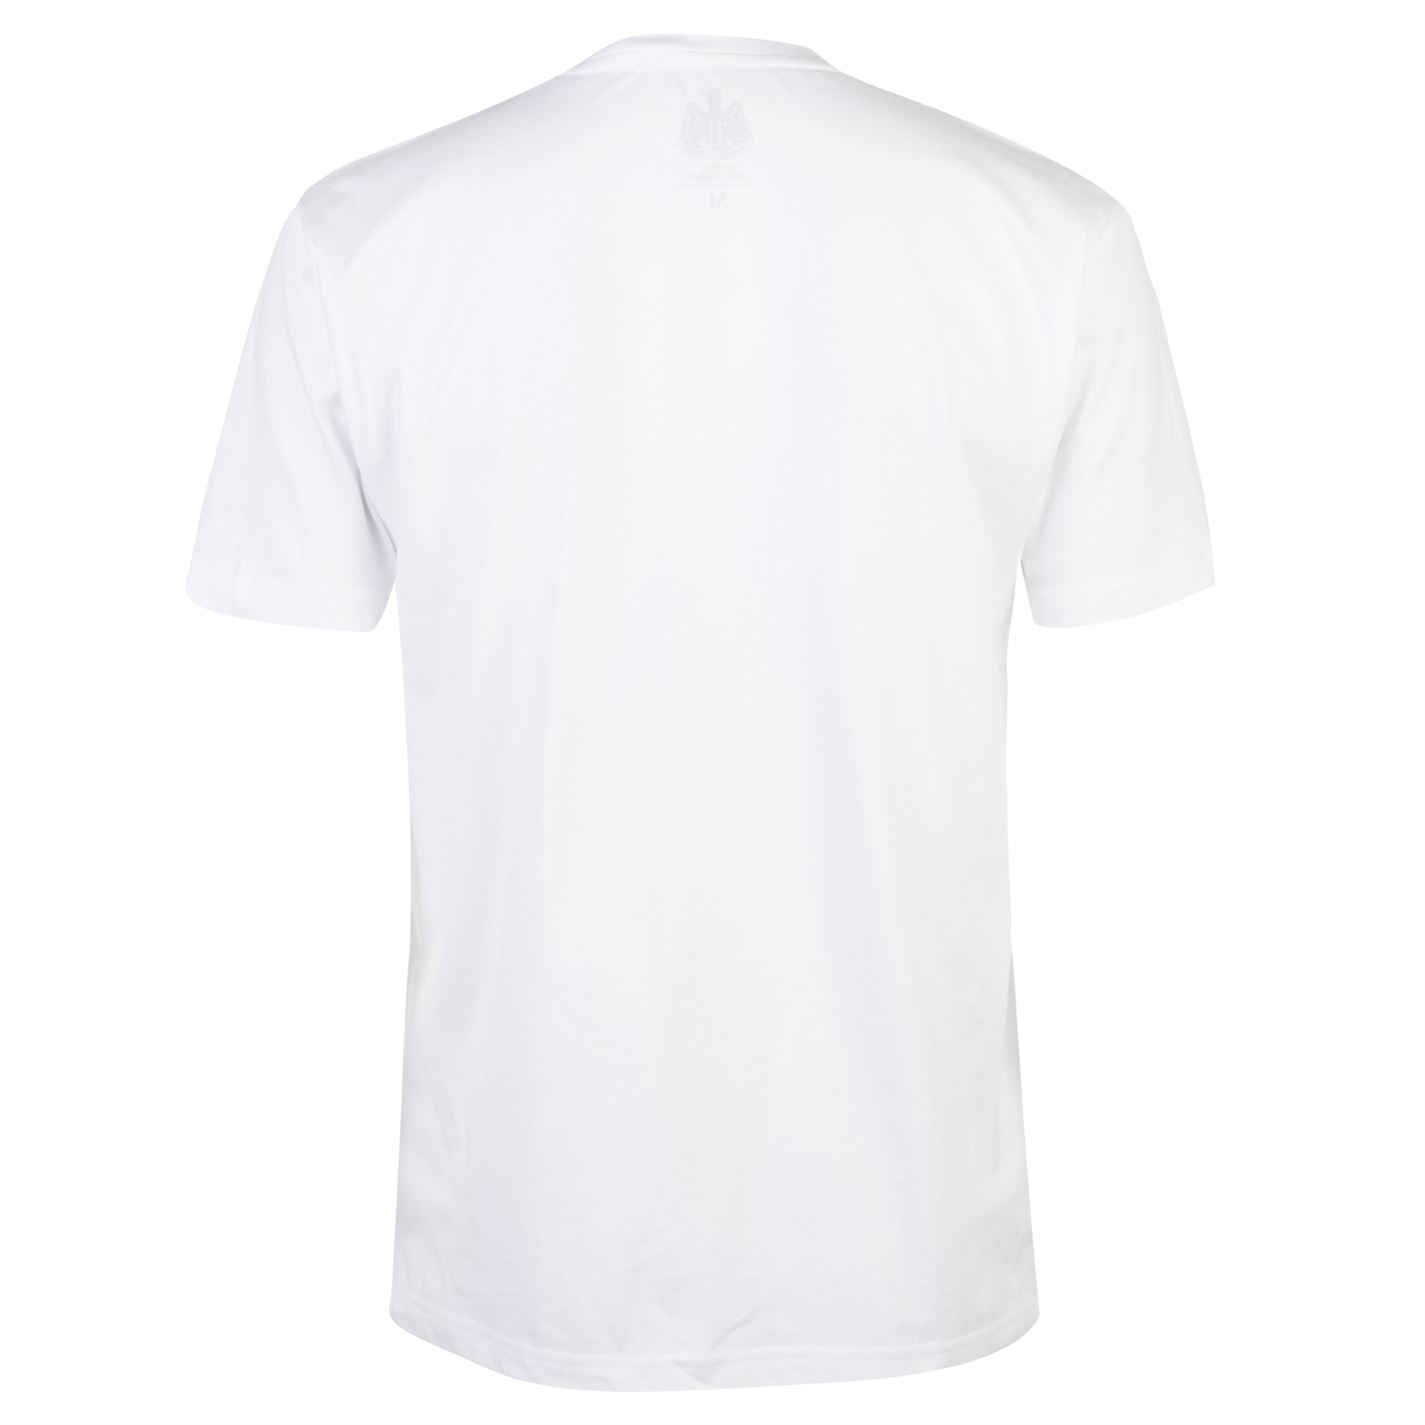 NUFC est T Shirt Mens Gents Crew Neck Tee Top Short Manche Lightweight Cotton